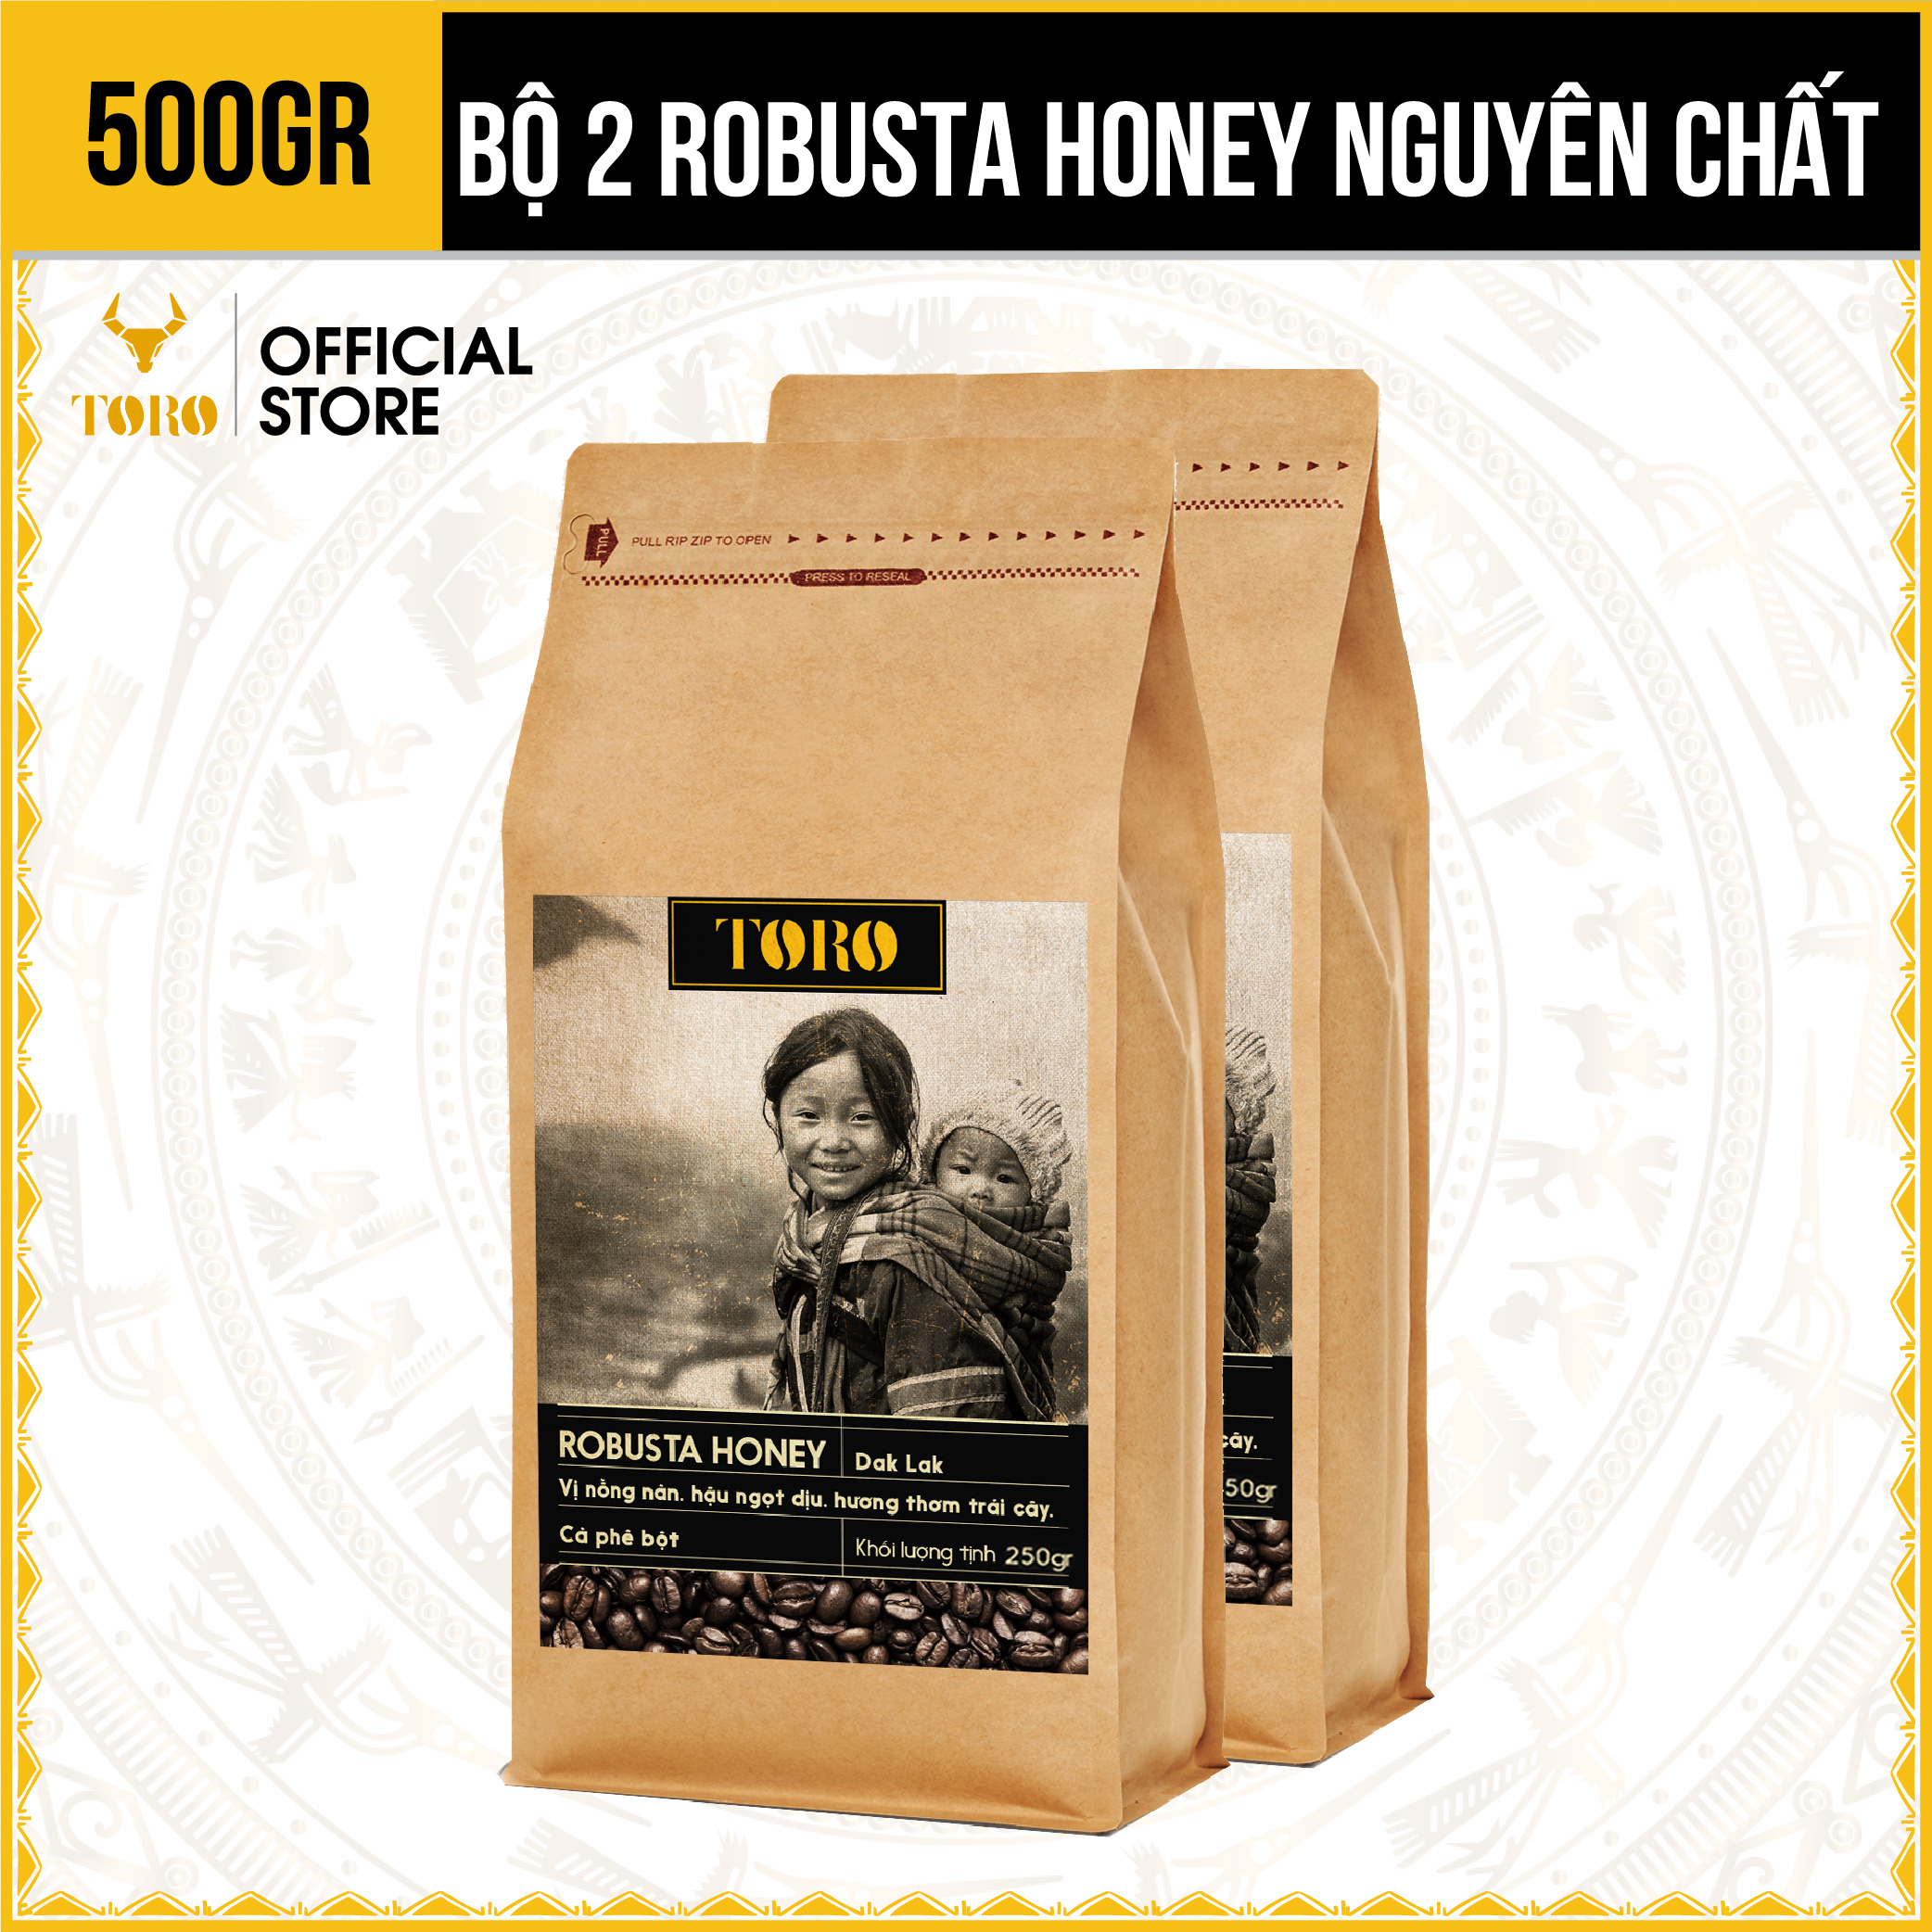 500GR Bộ 2 Cà Phê Bột Toro Robusta Honey Nguyên Chất 100% 250GR Gói TORO